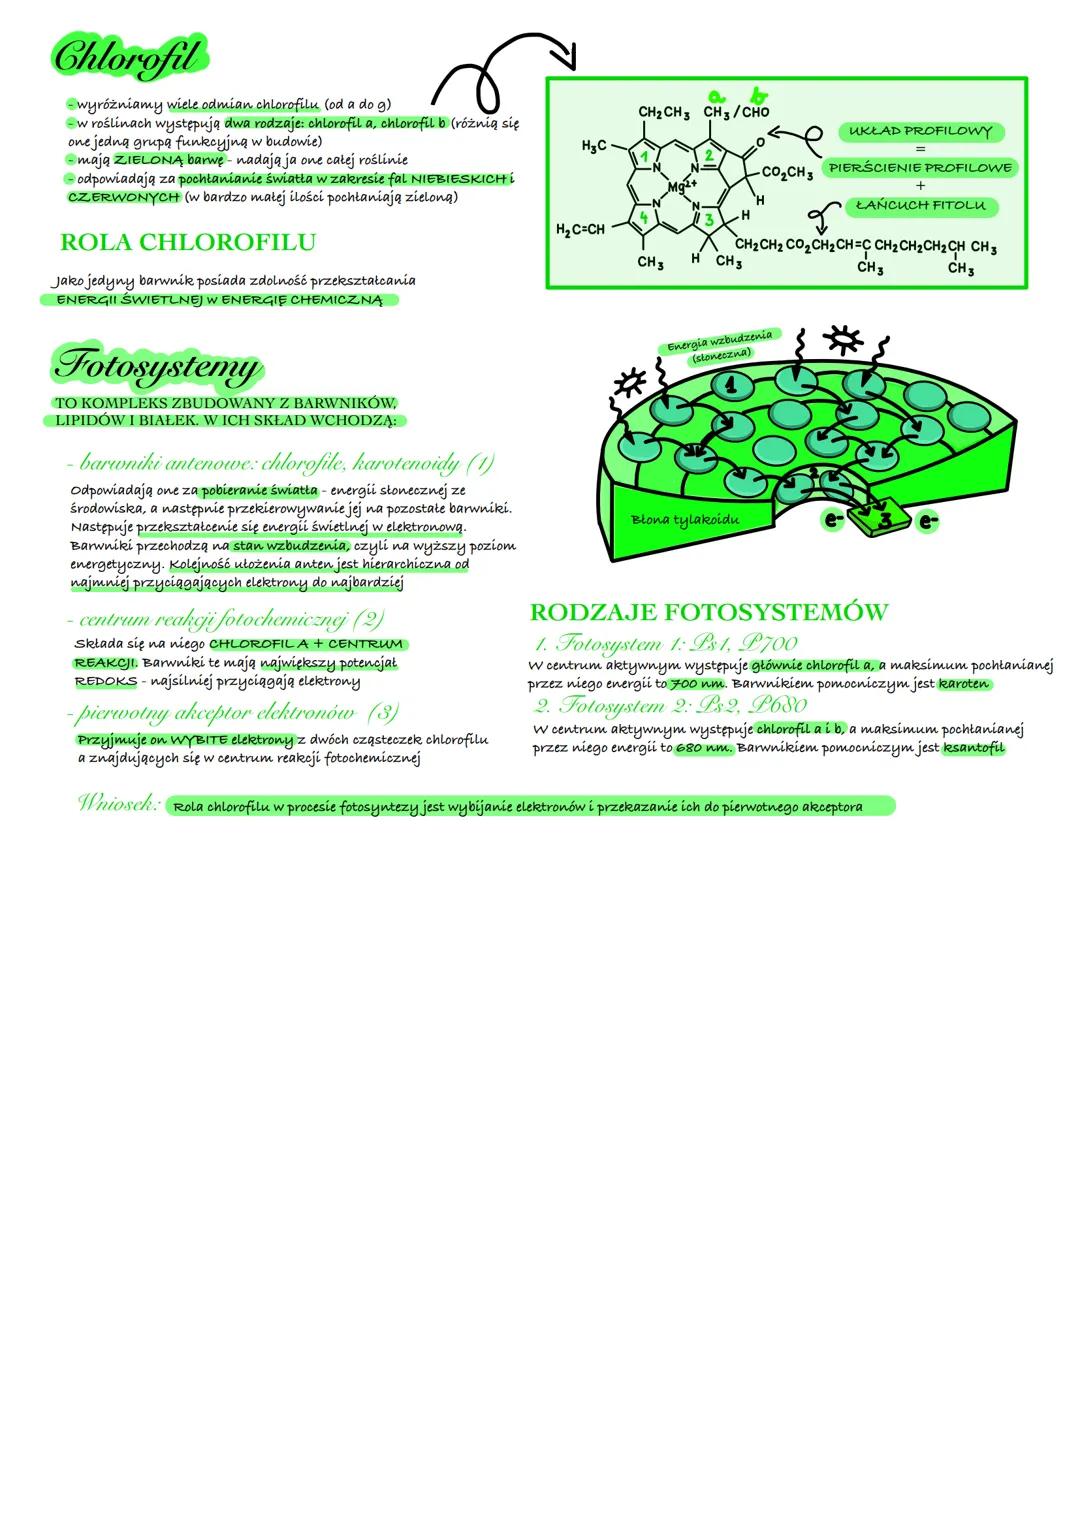 Fotosynteza
AUTOTROFICZNE ODŻYWIANIE SIĘ ORGANIZMÓW
Autotrofizm
to jeden z rodzaju odżywiania się
-przemiana anaboliczna (endoergiczna)
-pol